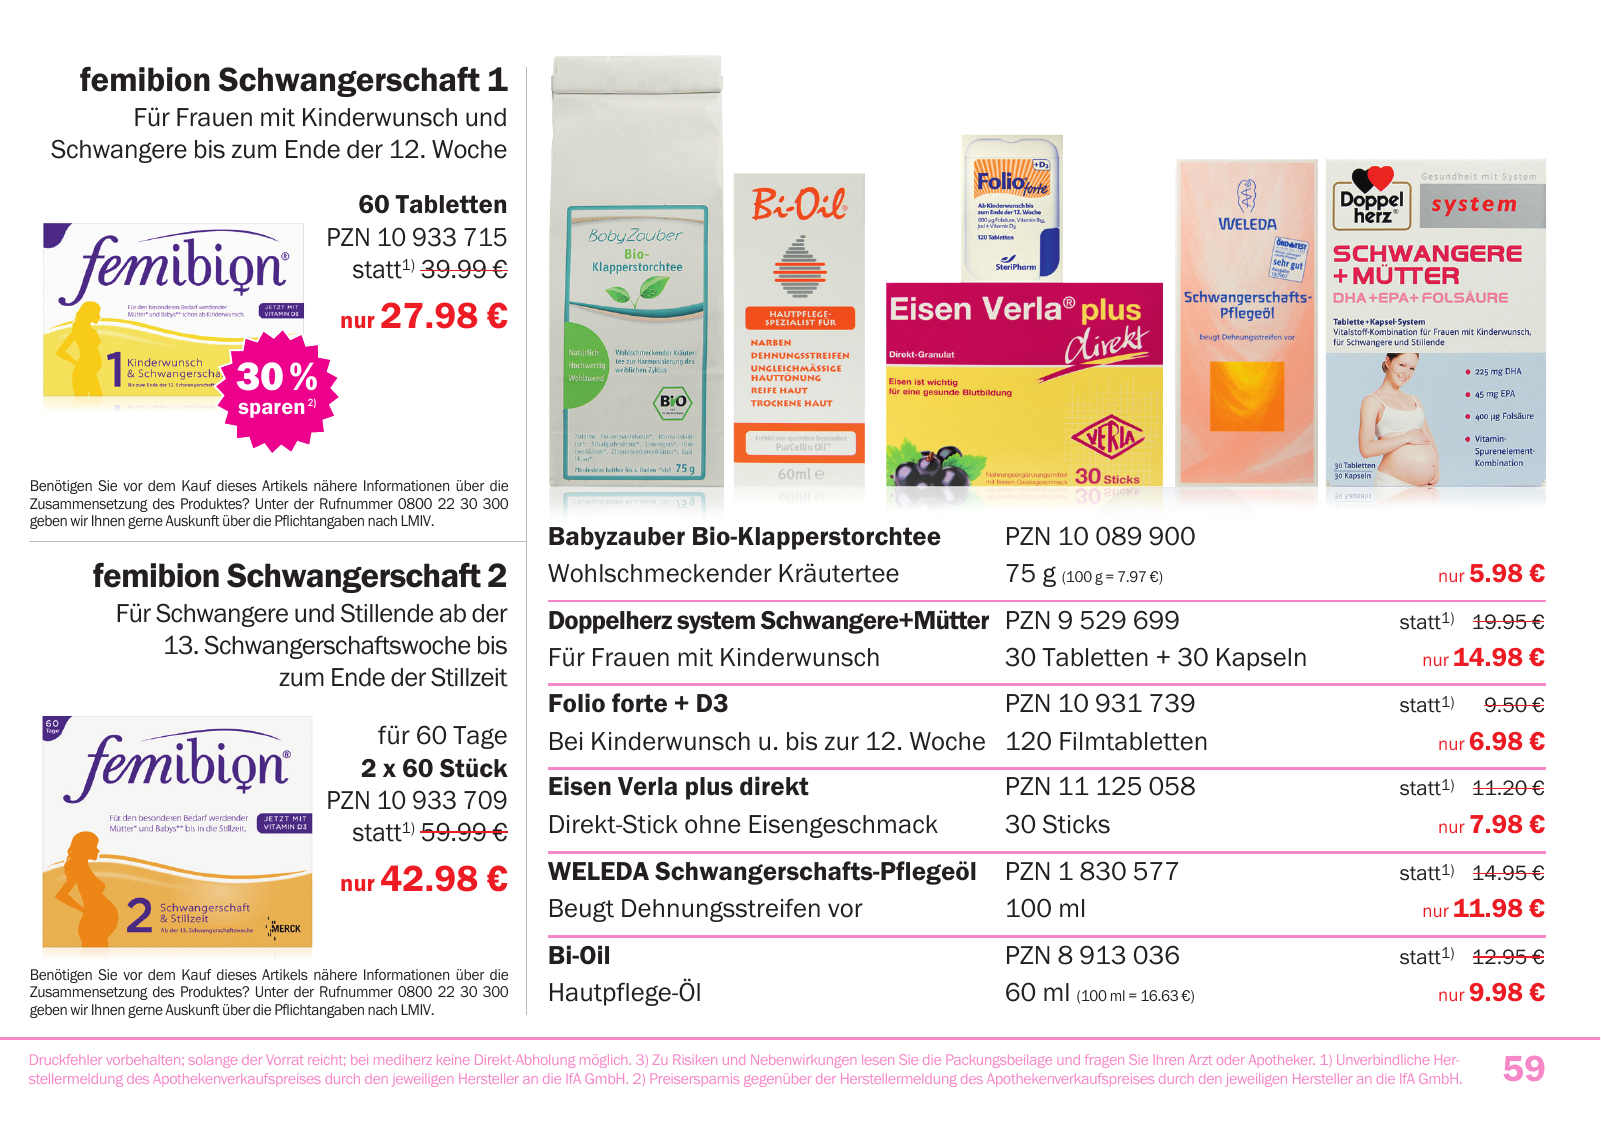 Vorschau Mediherz Katalog Herbst/Winter 2015/16 Seite 59